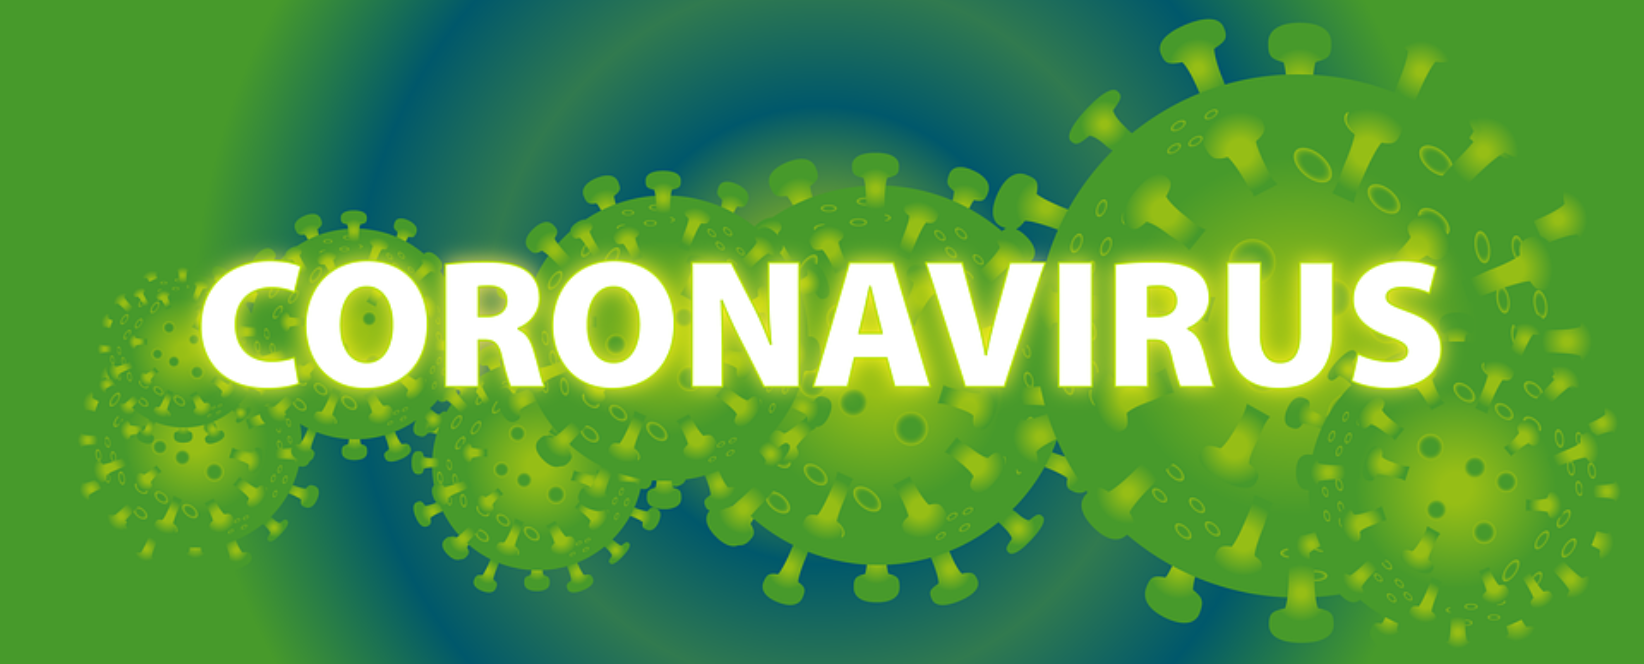 Campus and COVID-19 (2019 Novel Coronavirus)